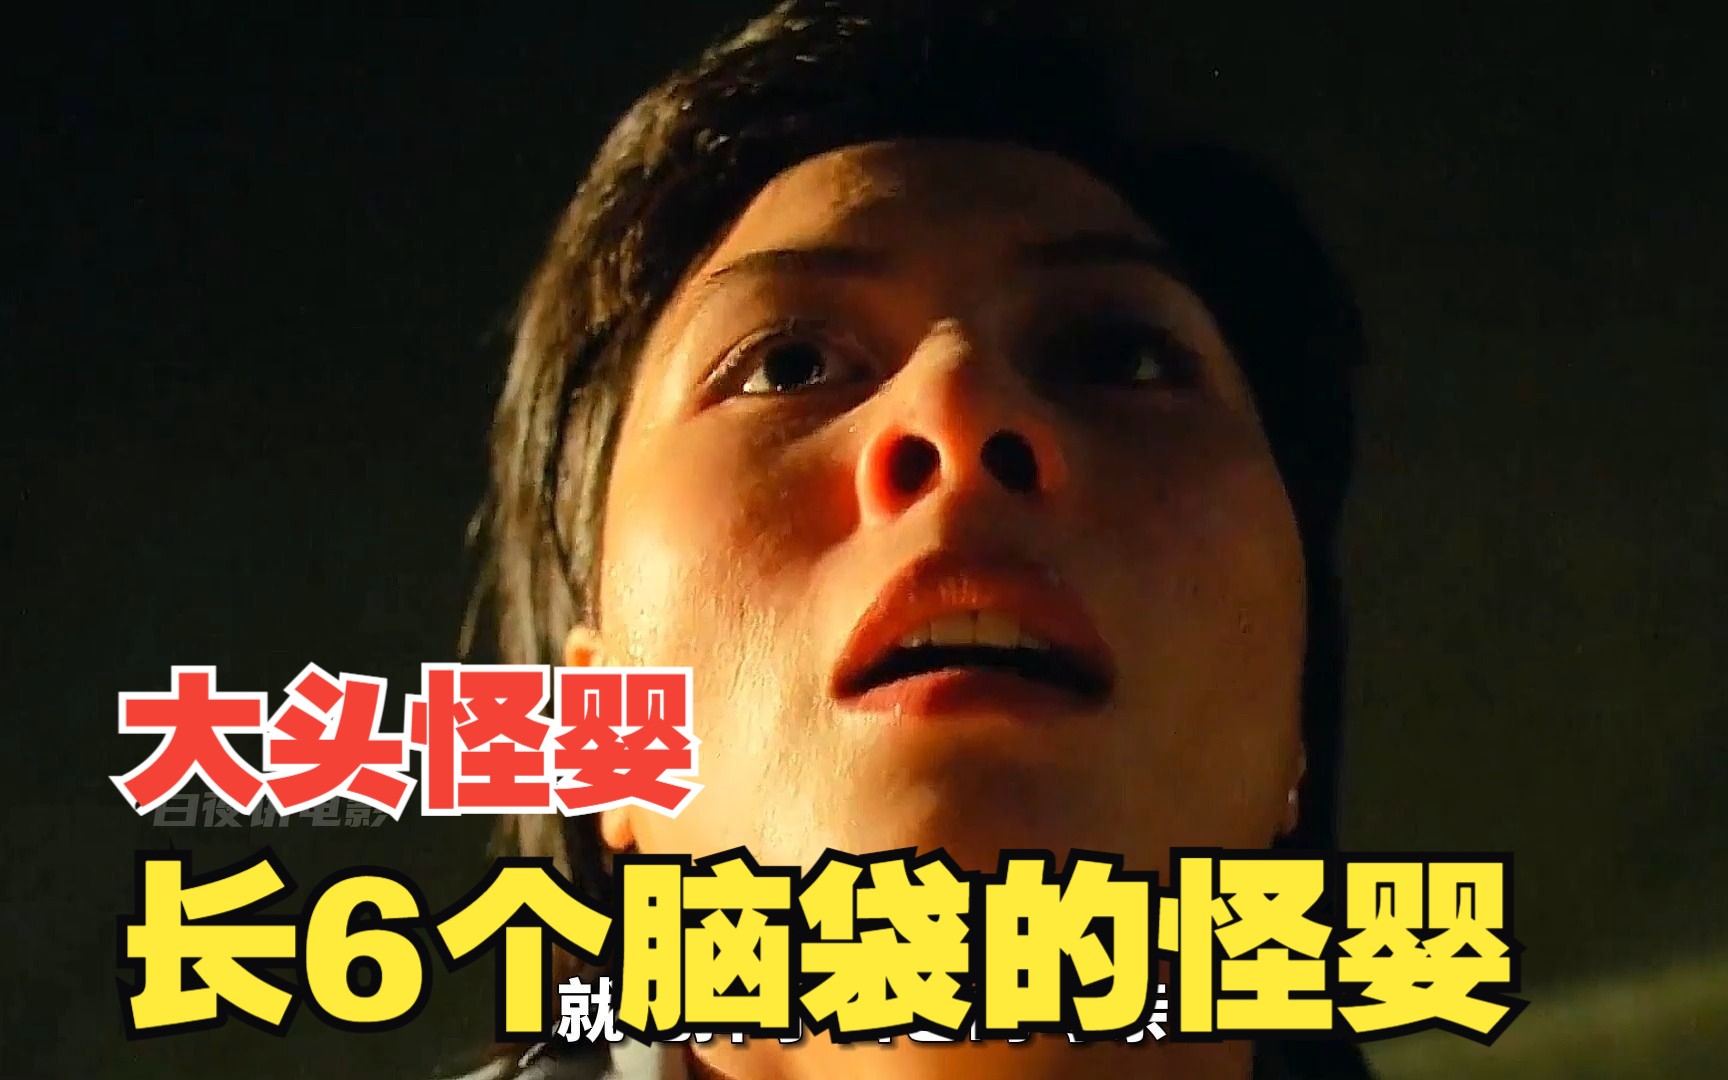 香港恐怖都市传说《大头怪婴》的真实事件,你听说过吗?